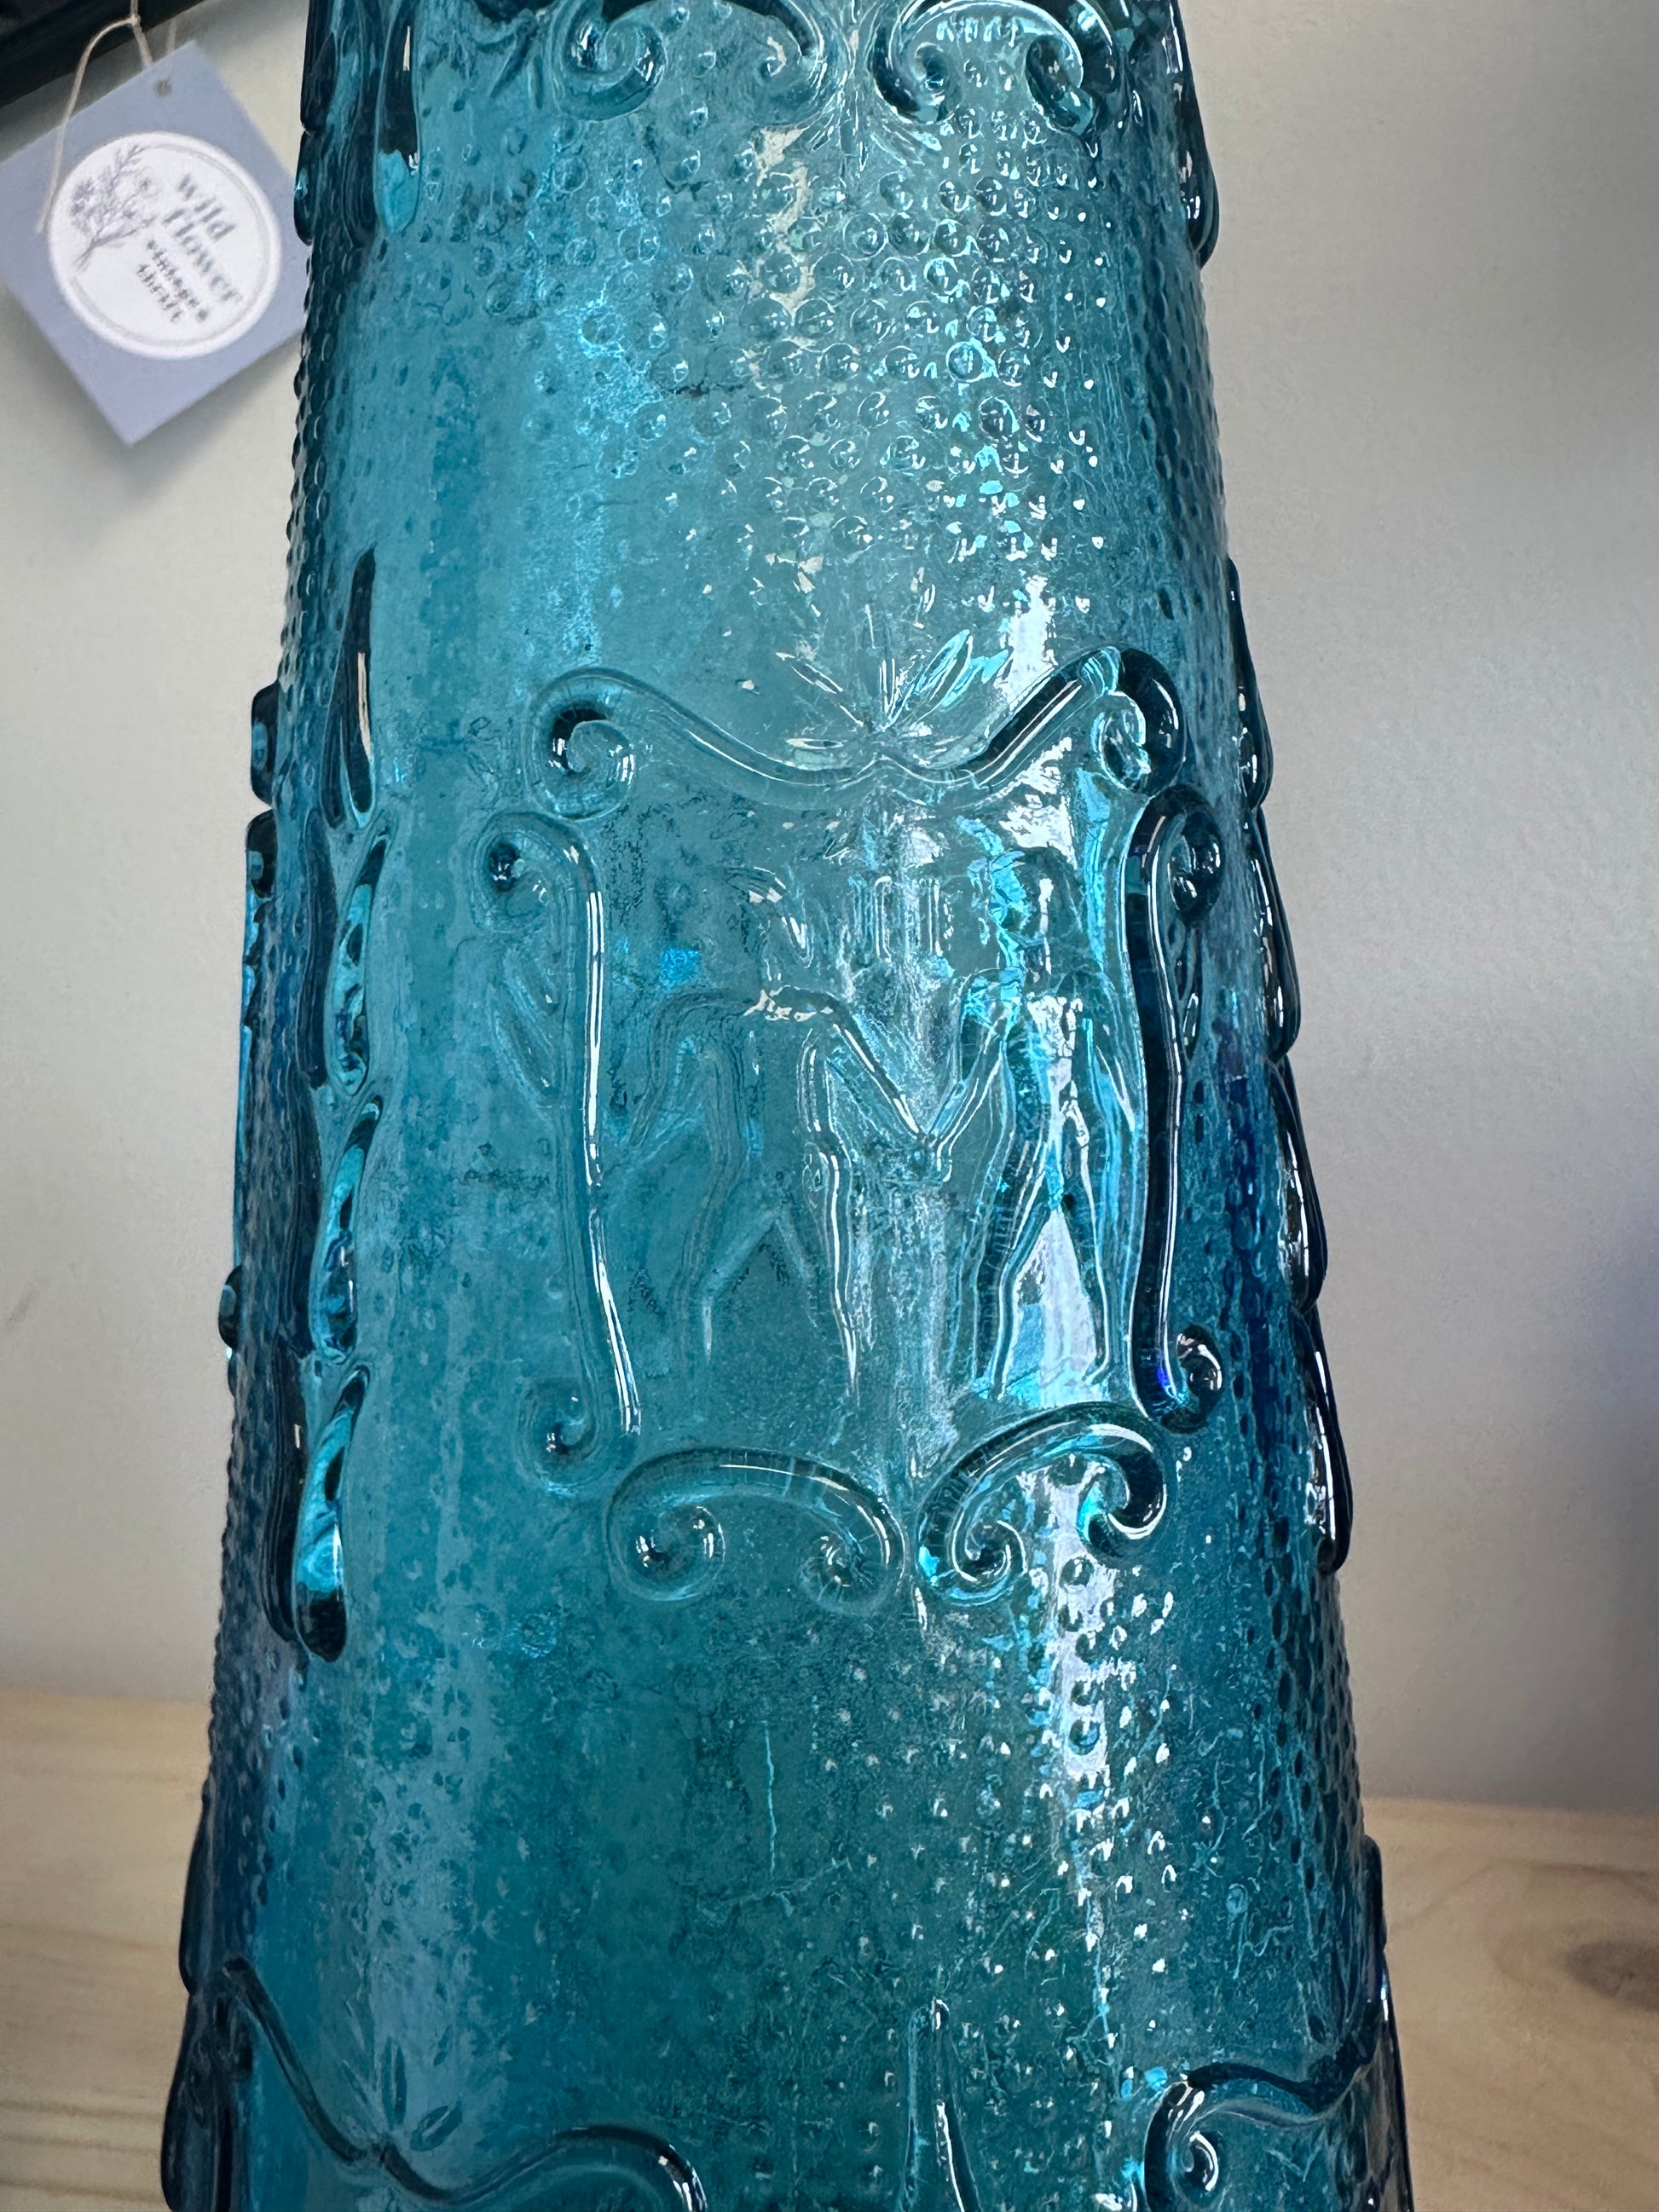 Empoli Genie Bottle in Blue Glass